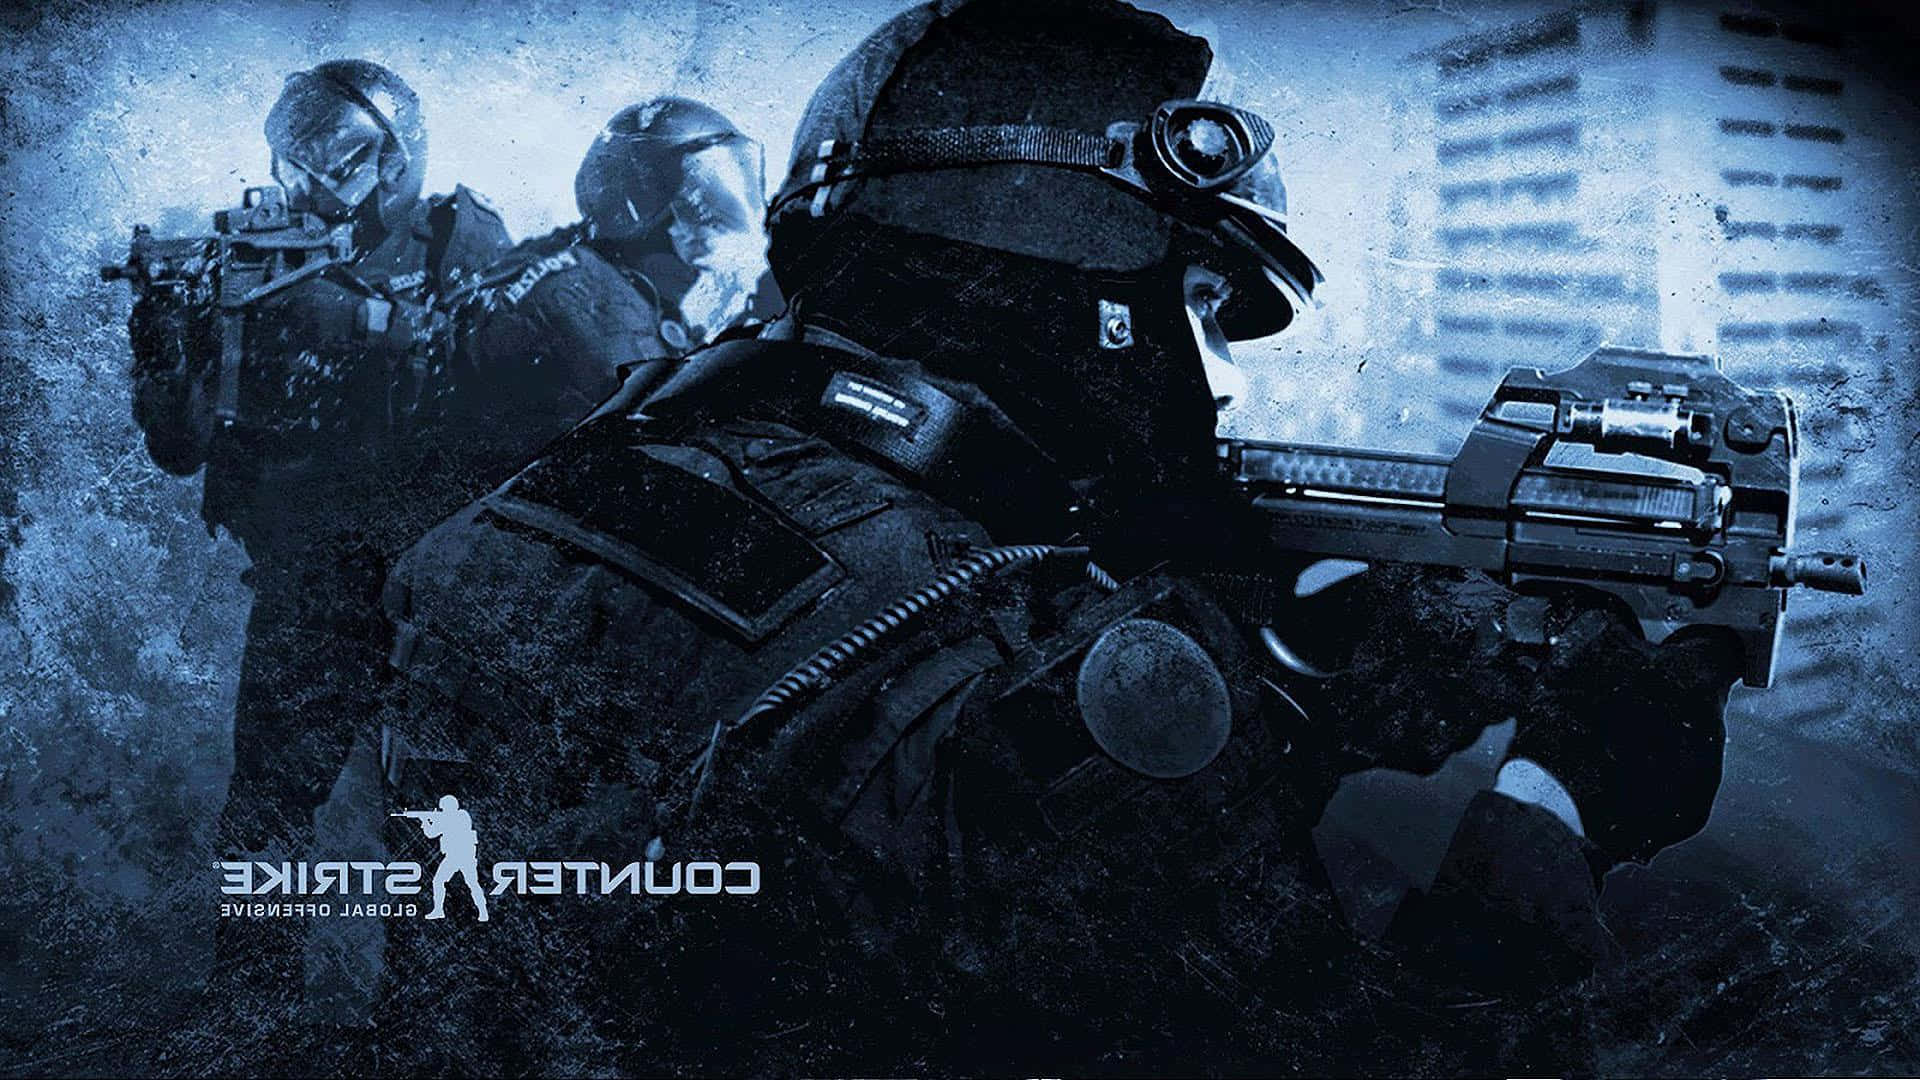 Dunkelvintage Blau Soldaten 1080p Counter Strike Global Offensive Hintergrund